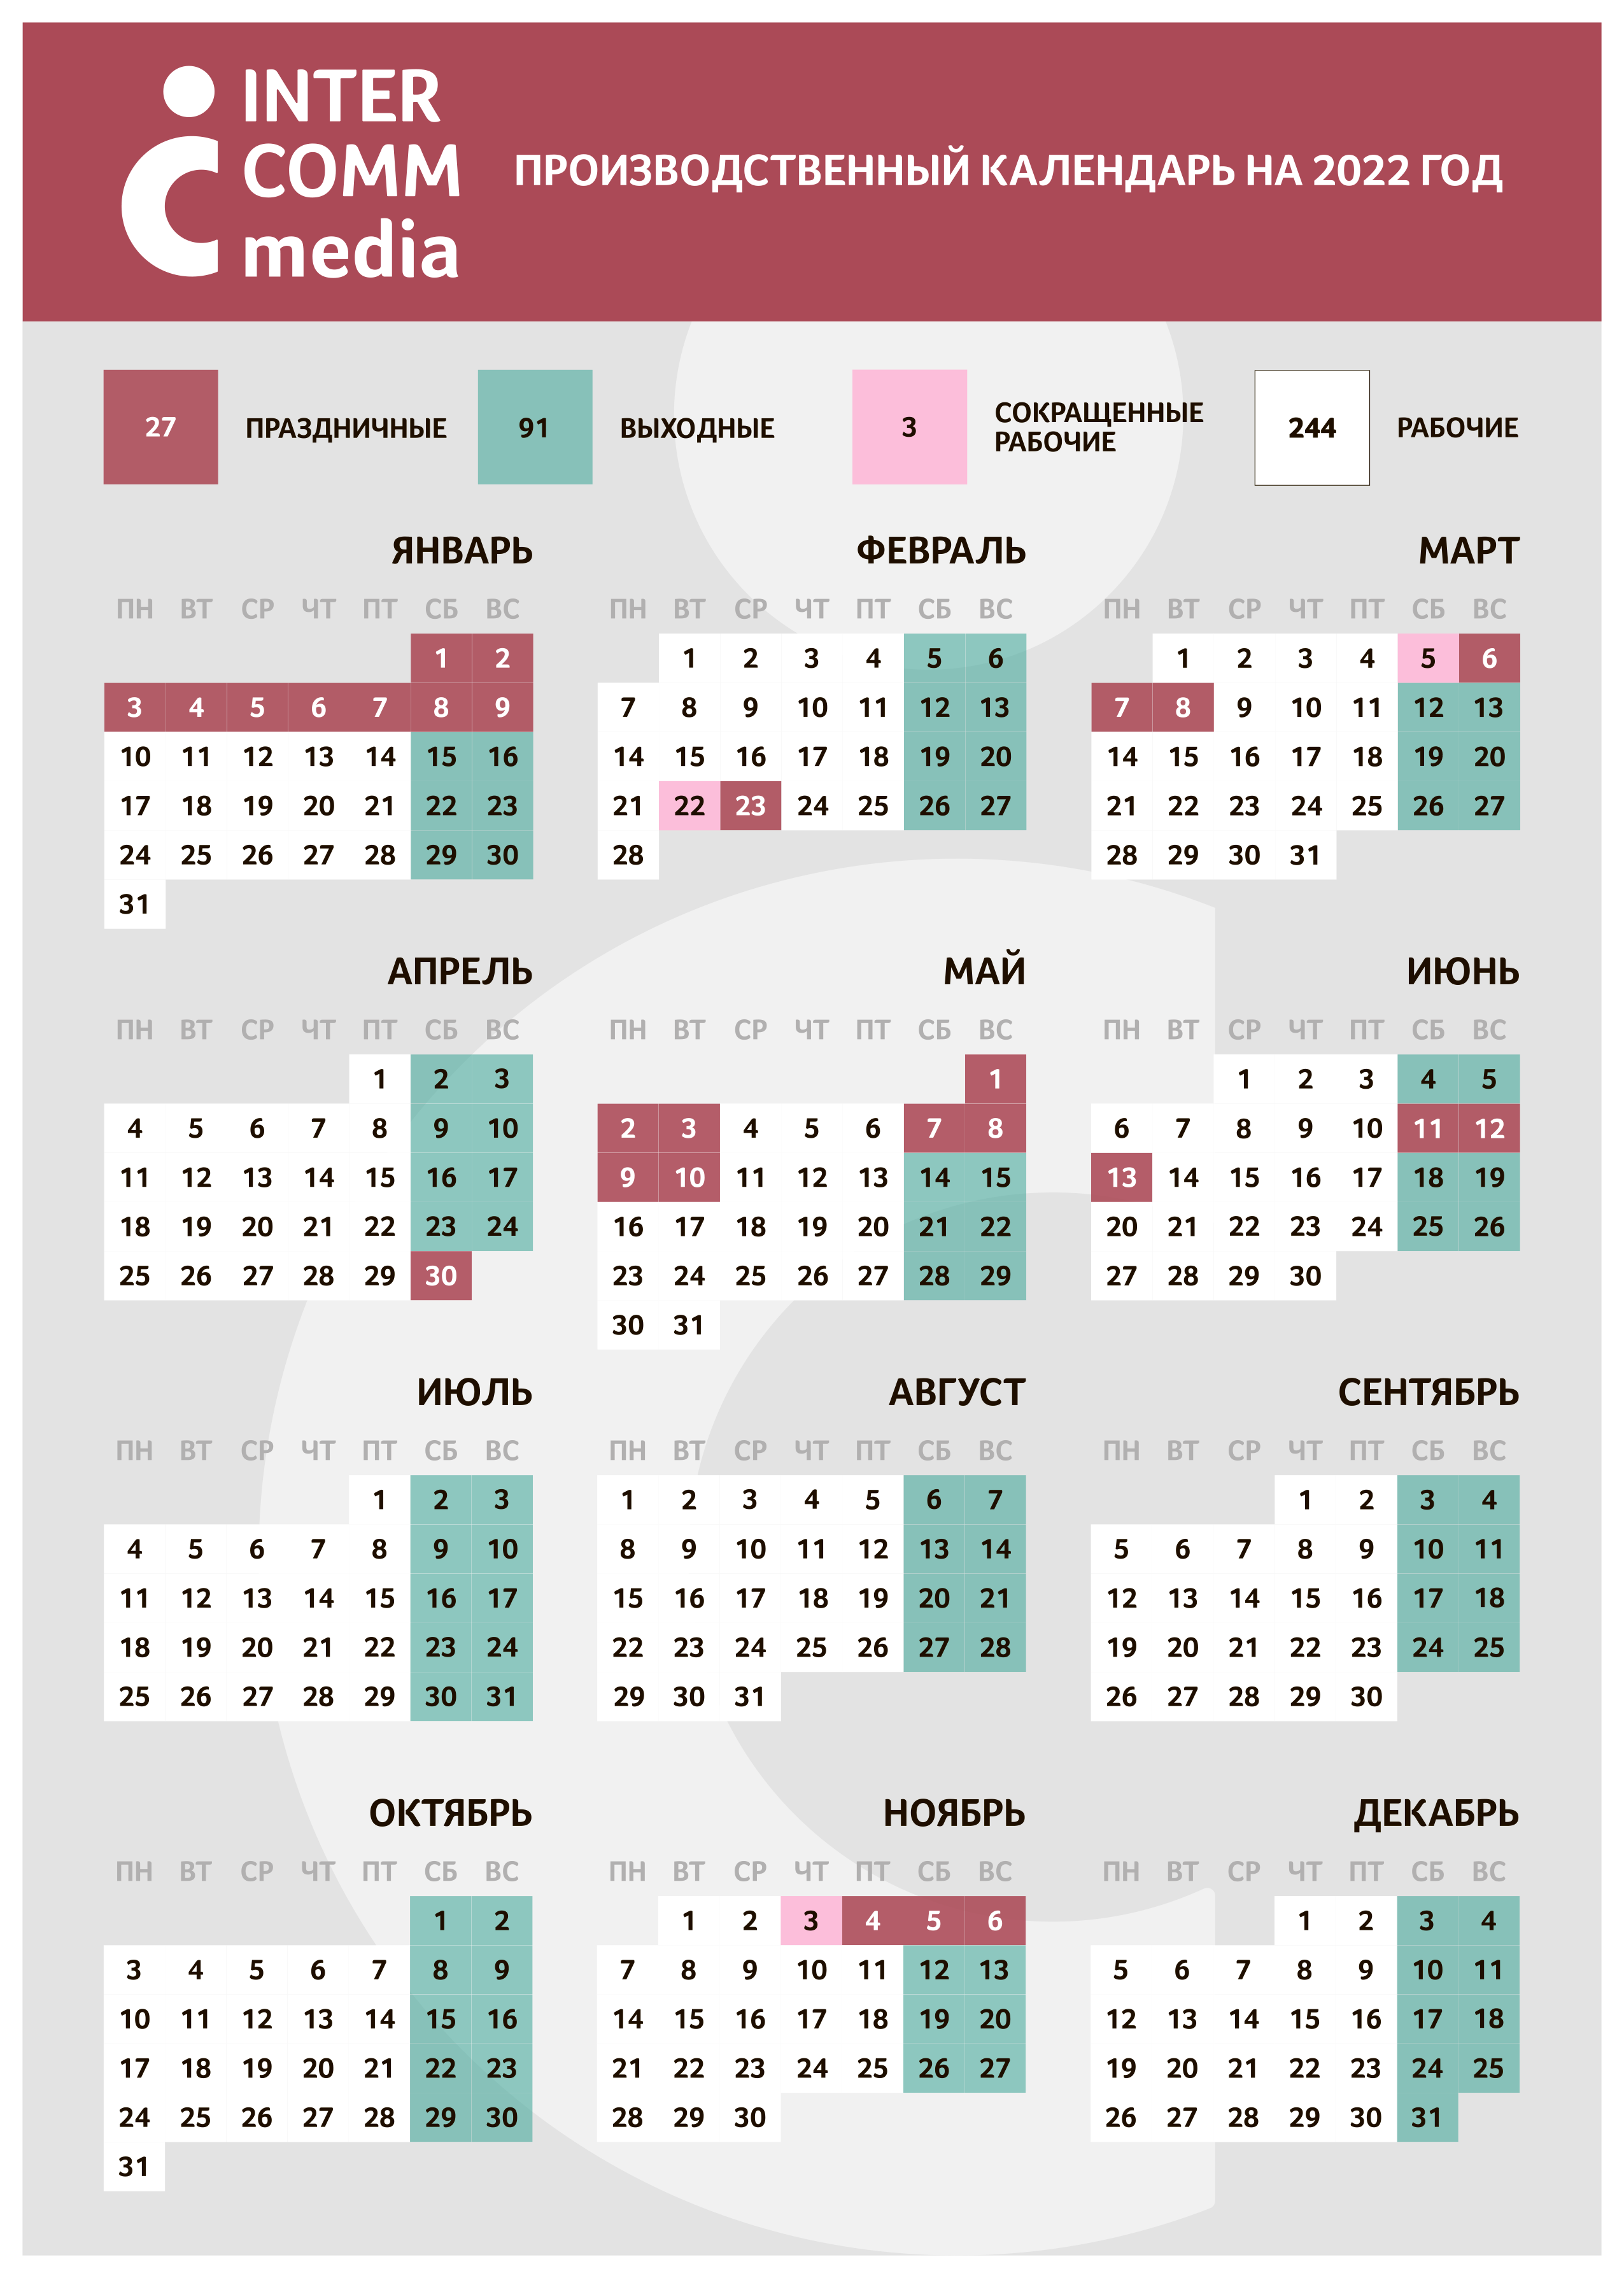 Производственный календарь на 2022 год